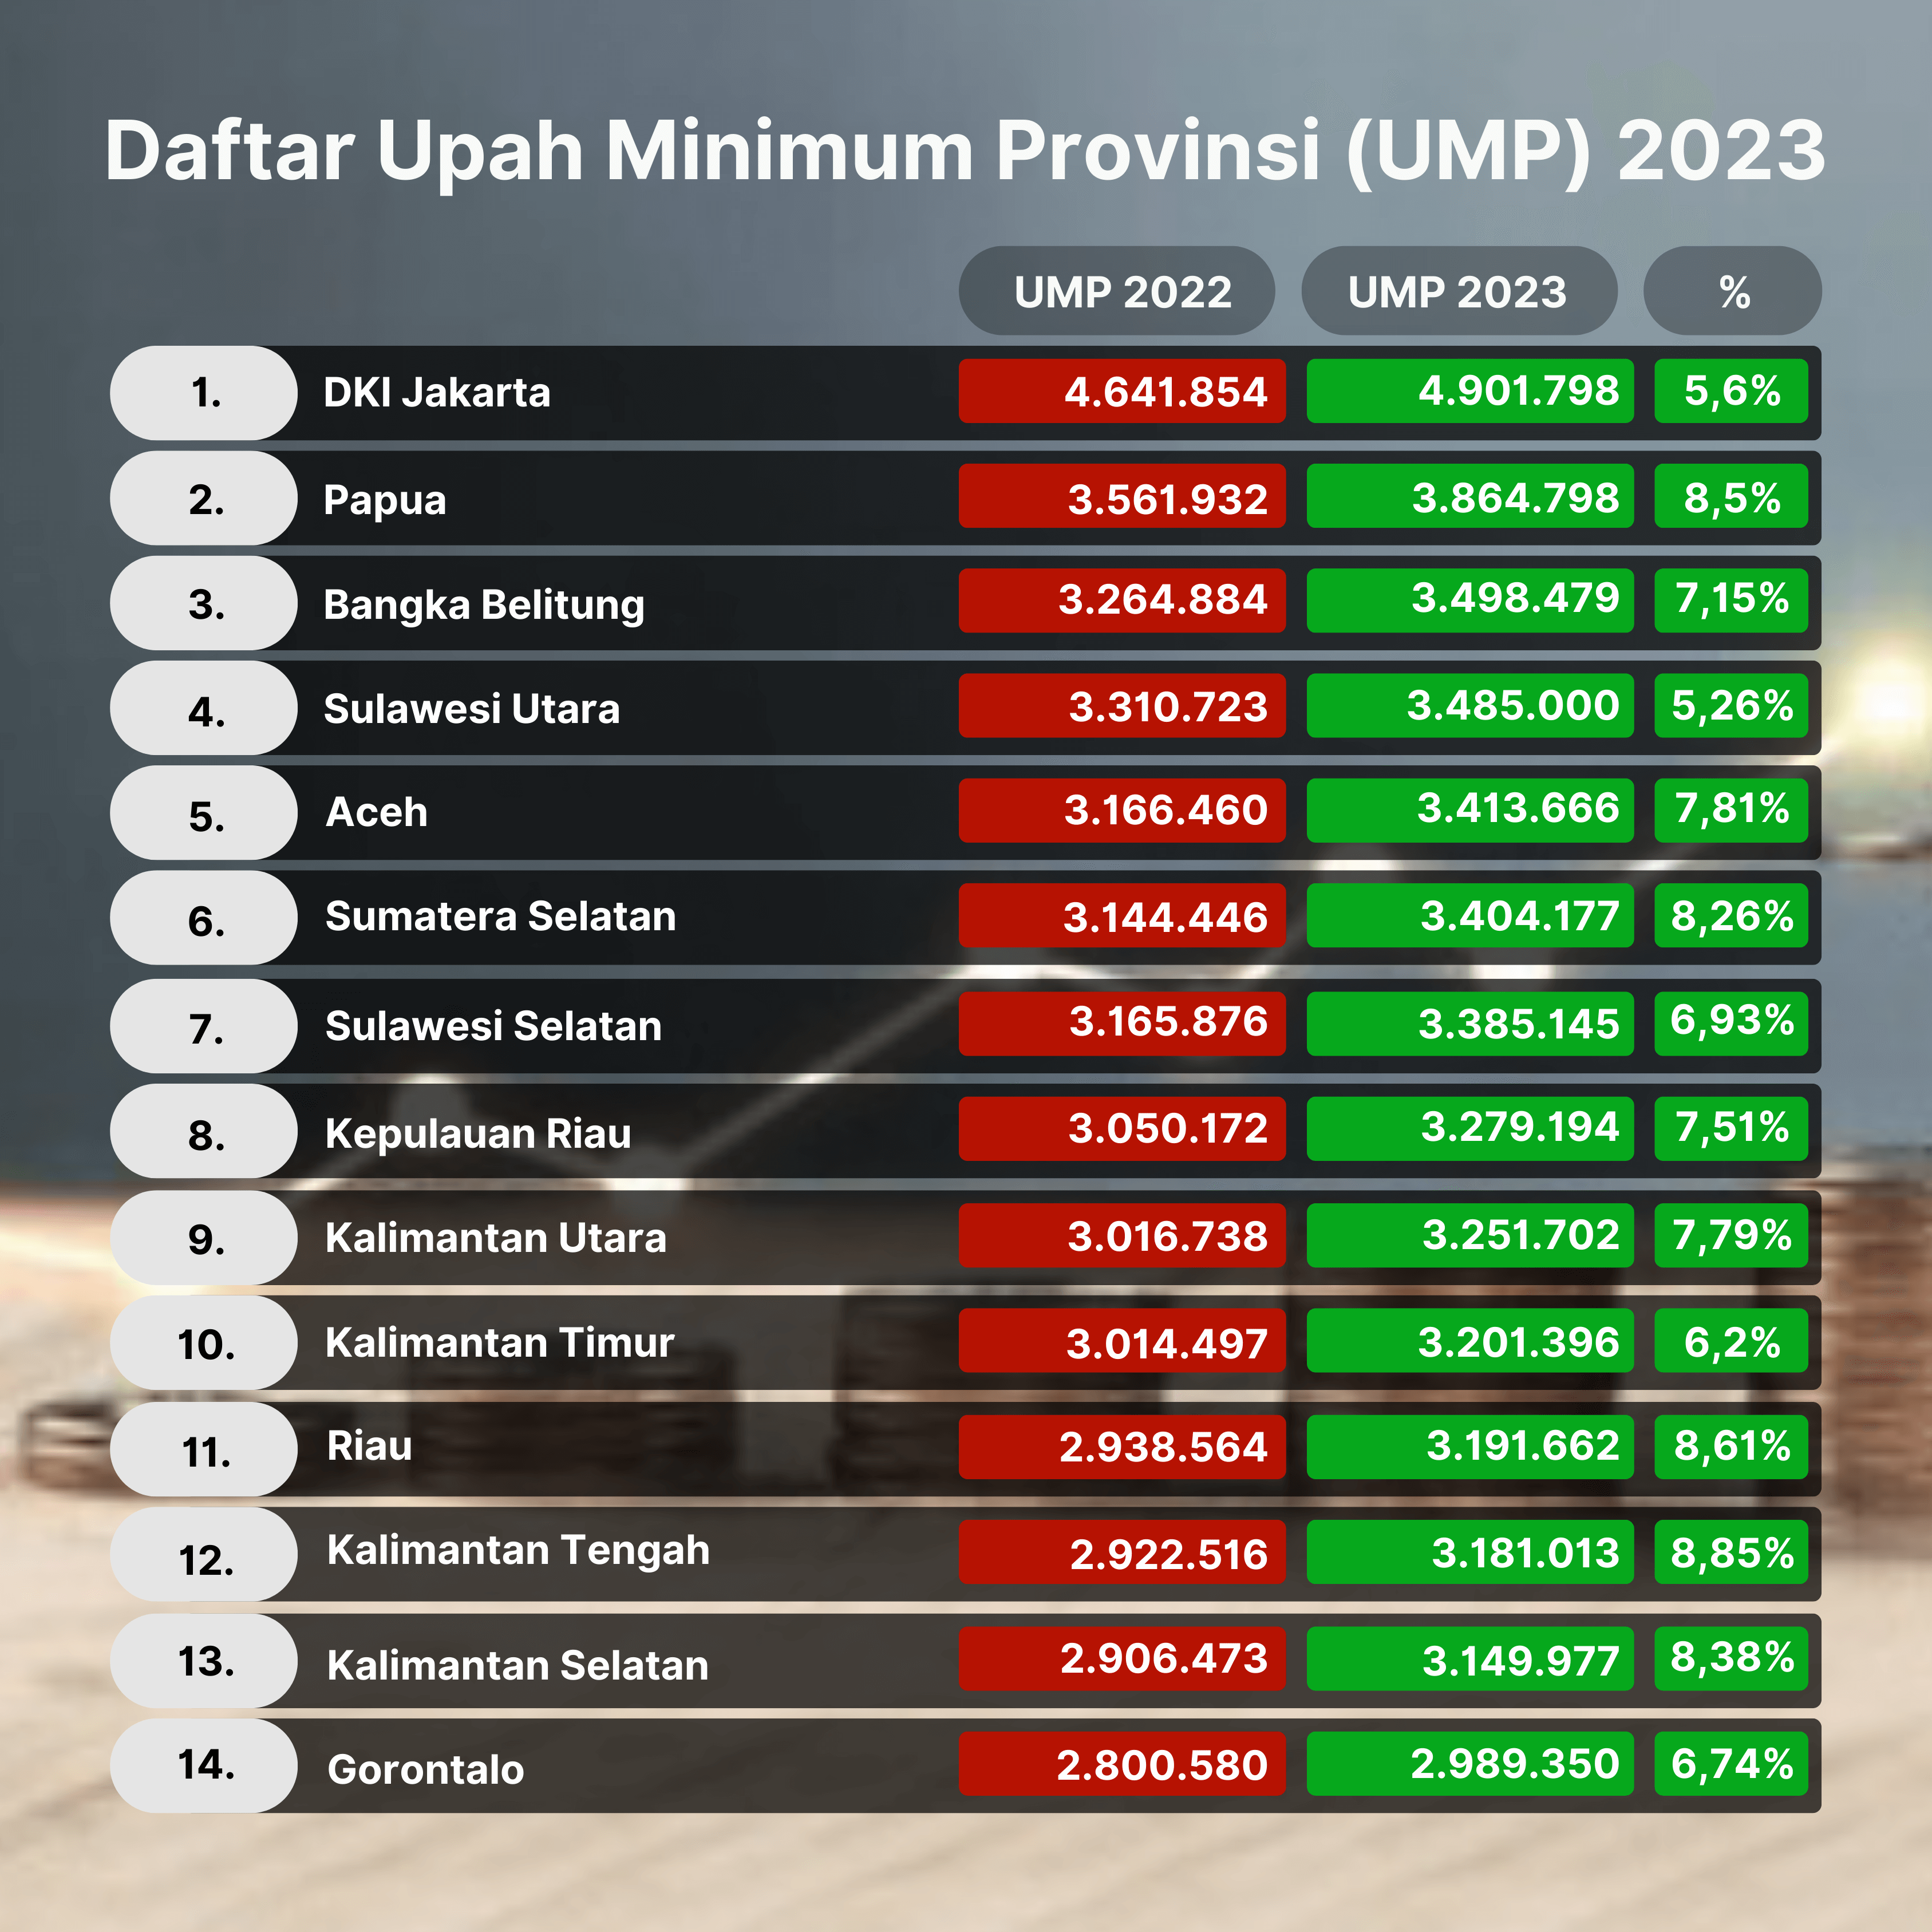 Daftar Upah Minimum Provinsi (UMP) 2022 2